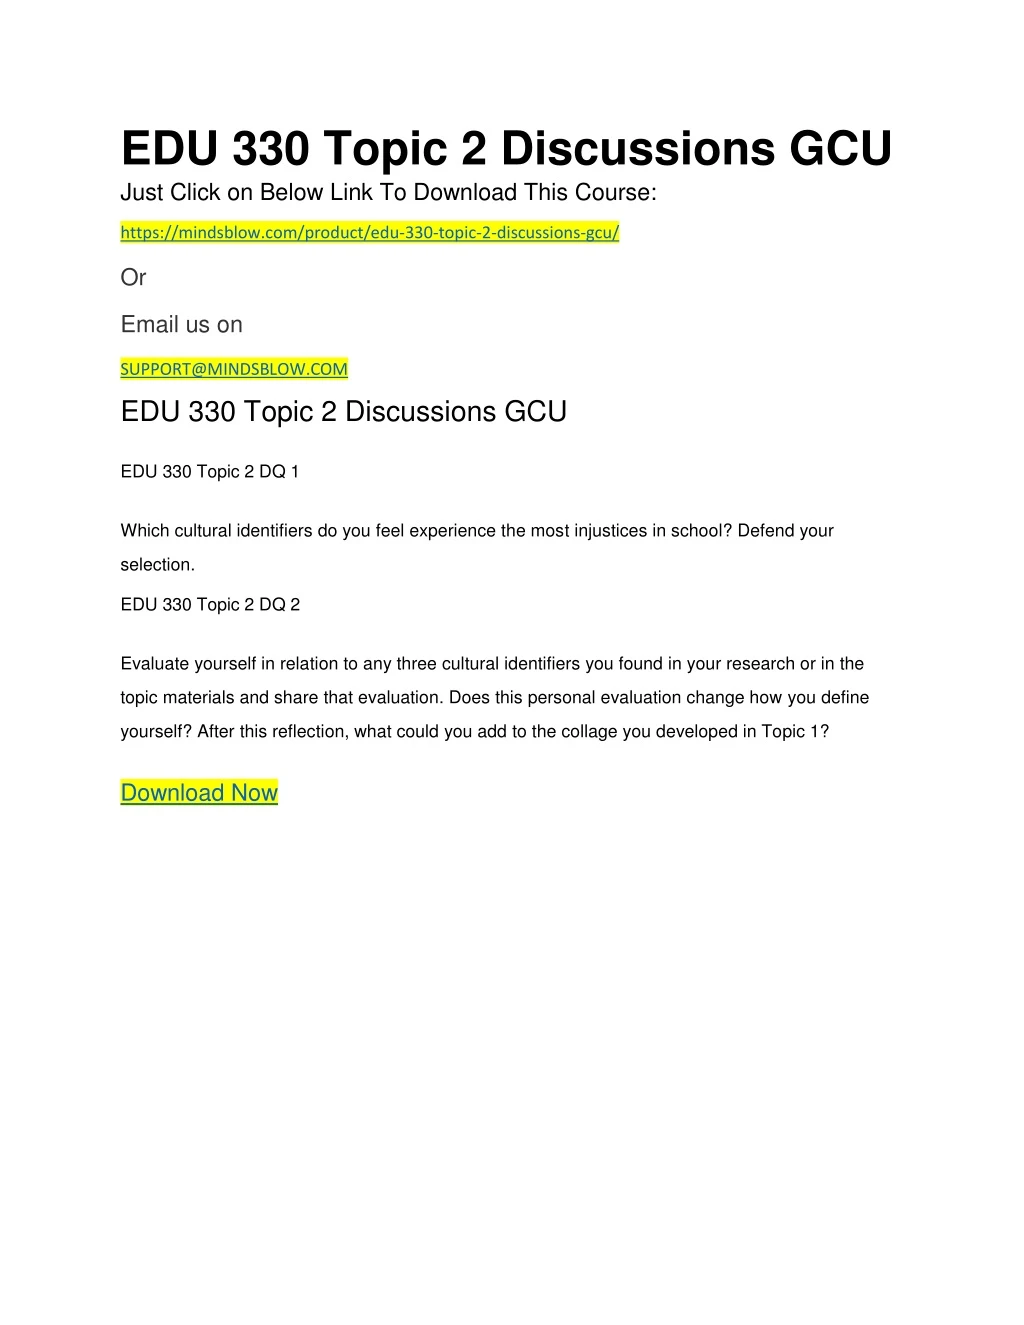 edu 330 topic 2 discussions gcu just click